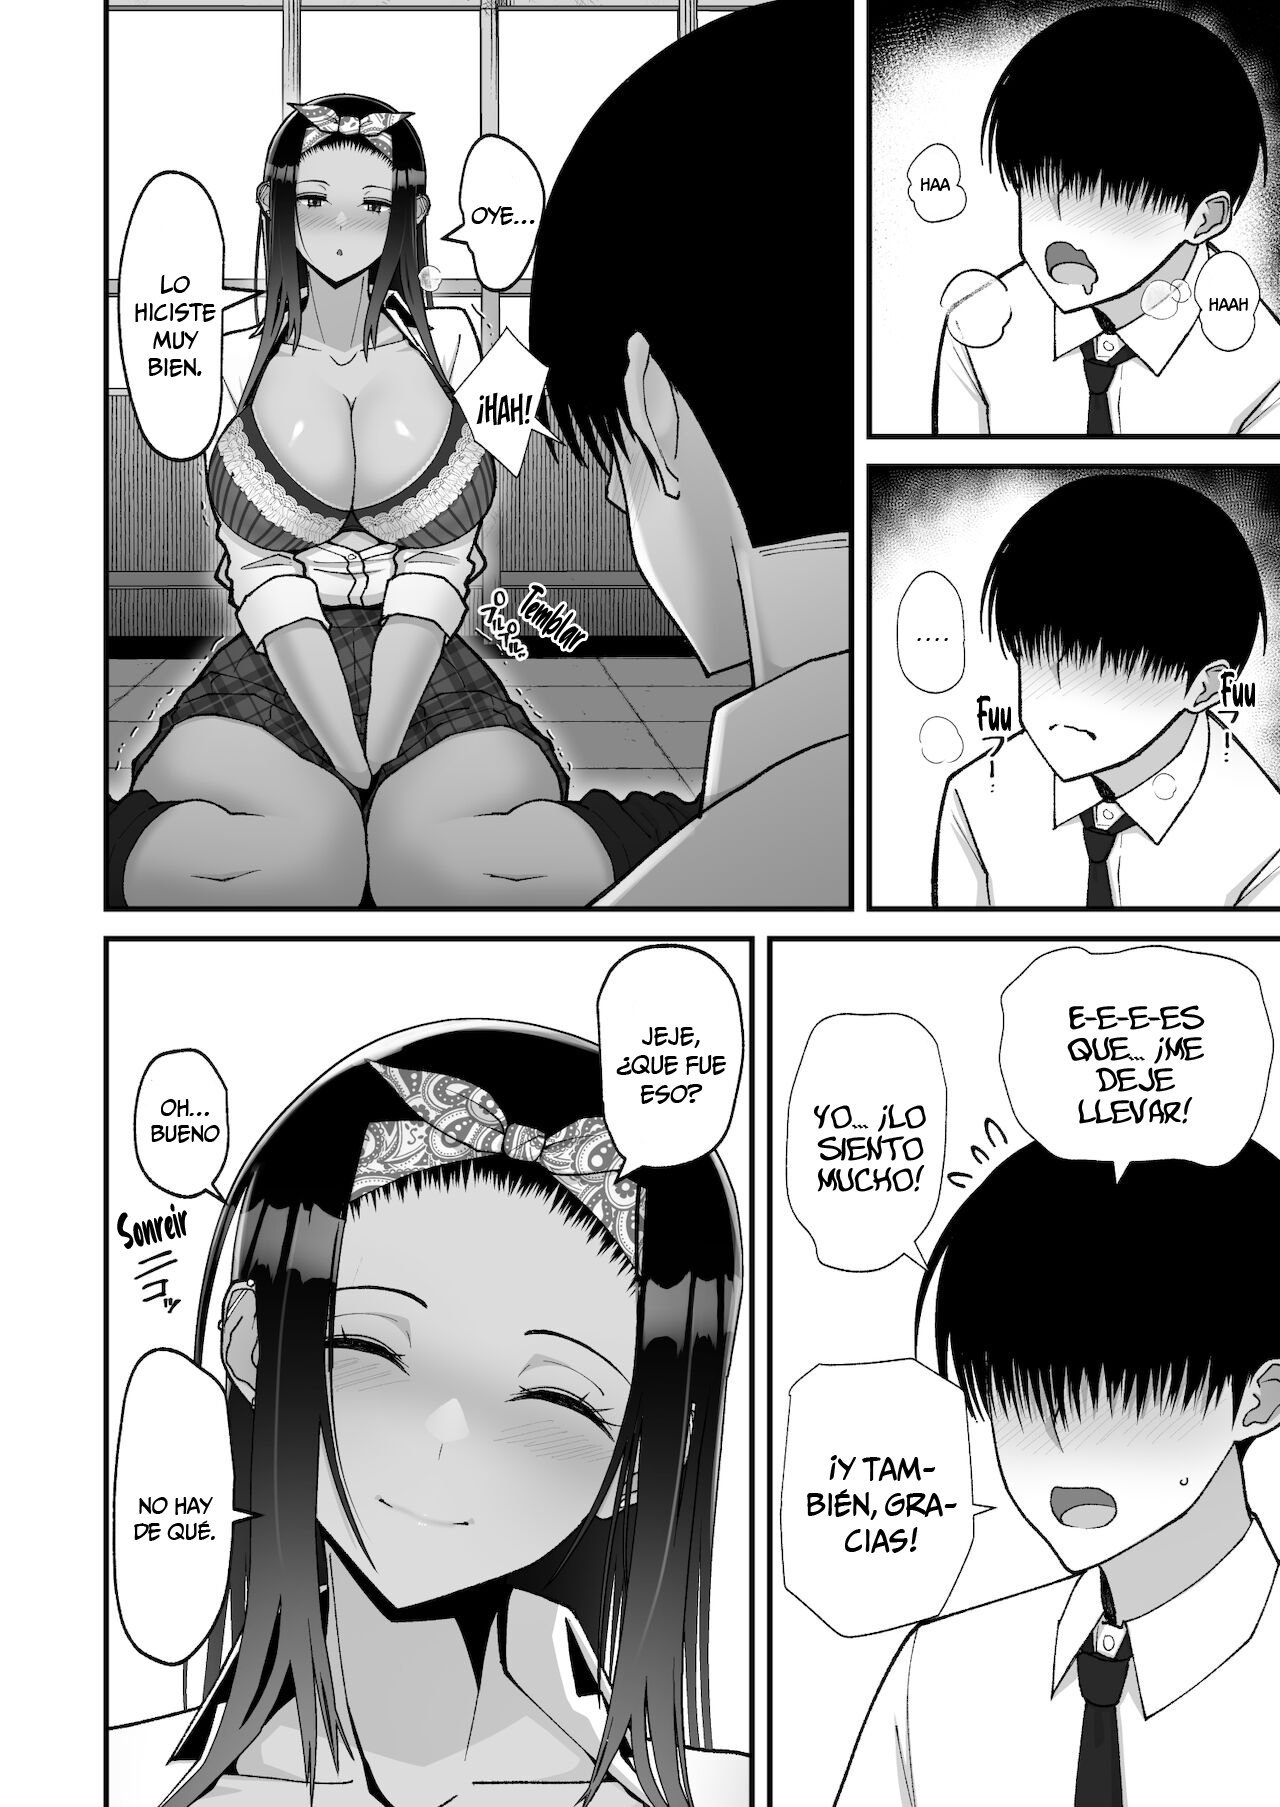 La historia sobre una amorosa gal otaku - 18